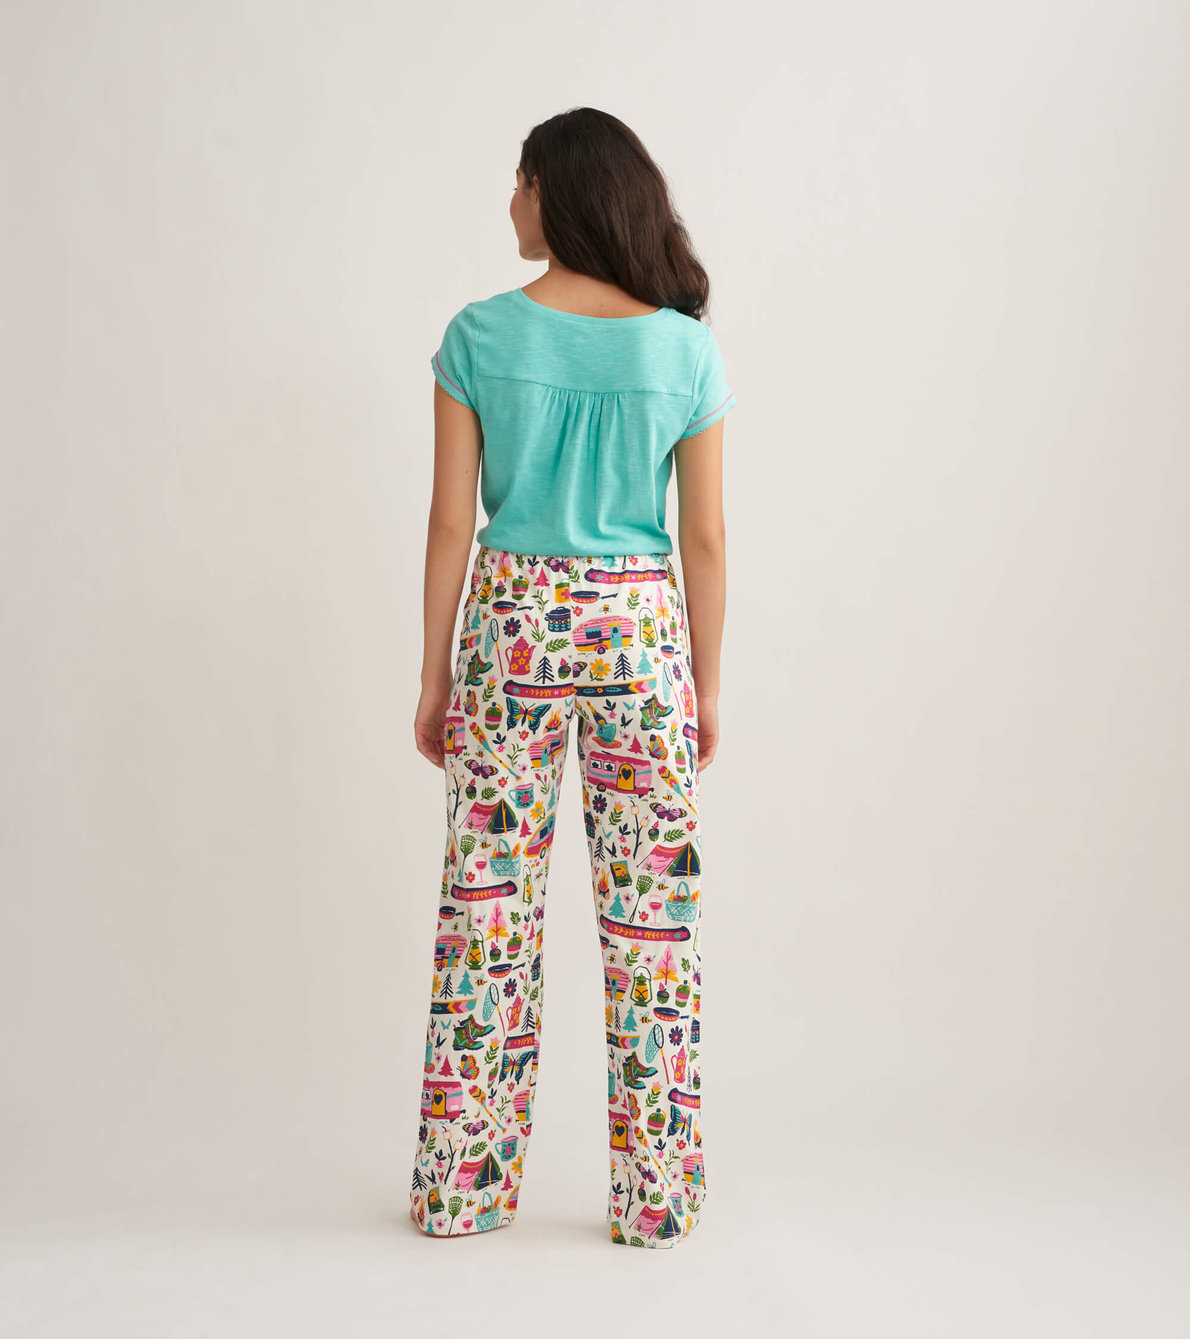 View larger image of Glamping Women's Jersey Pajama Pants